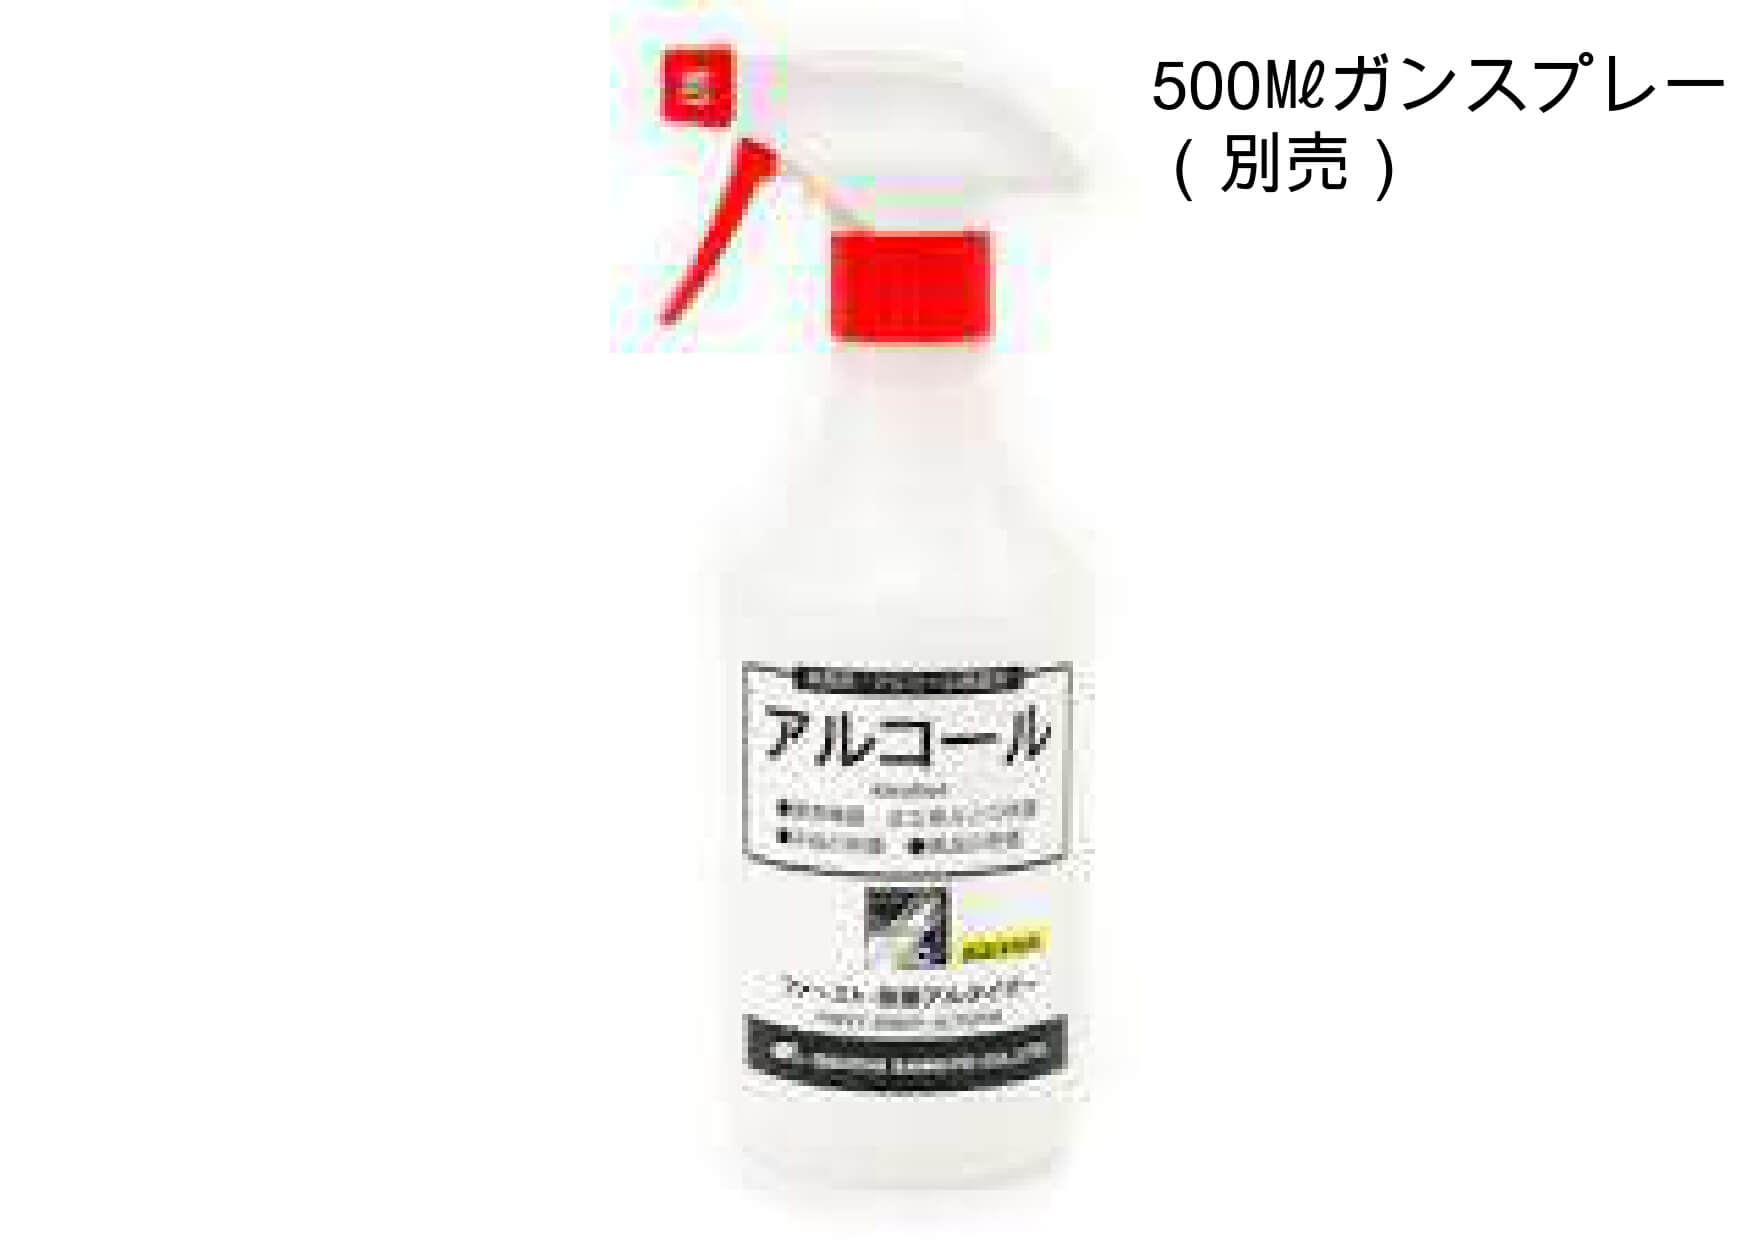 5070-5.Food additive ethanol preparation sunlet altizer75